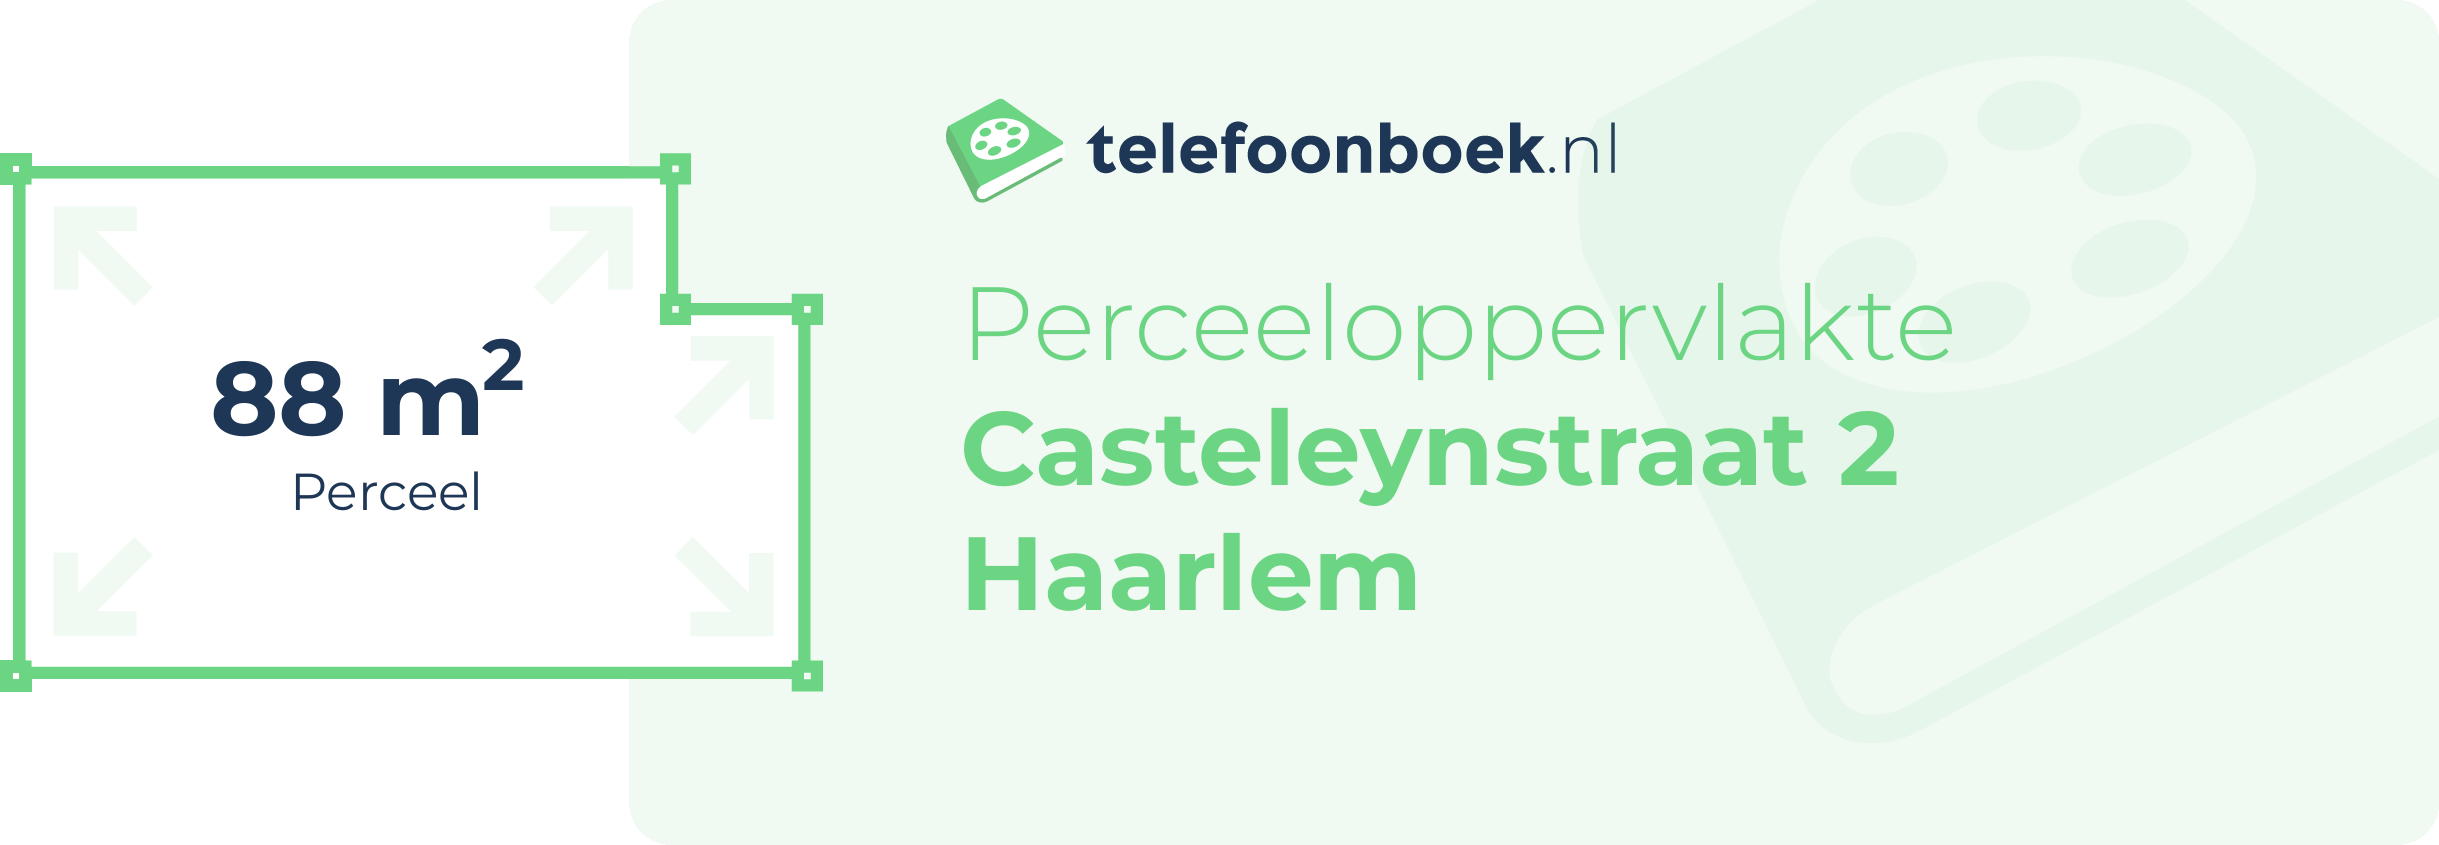 Perceeloppervlakte Casteleynstraat 2 Haarlem